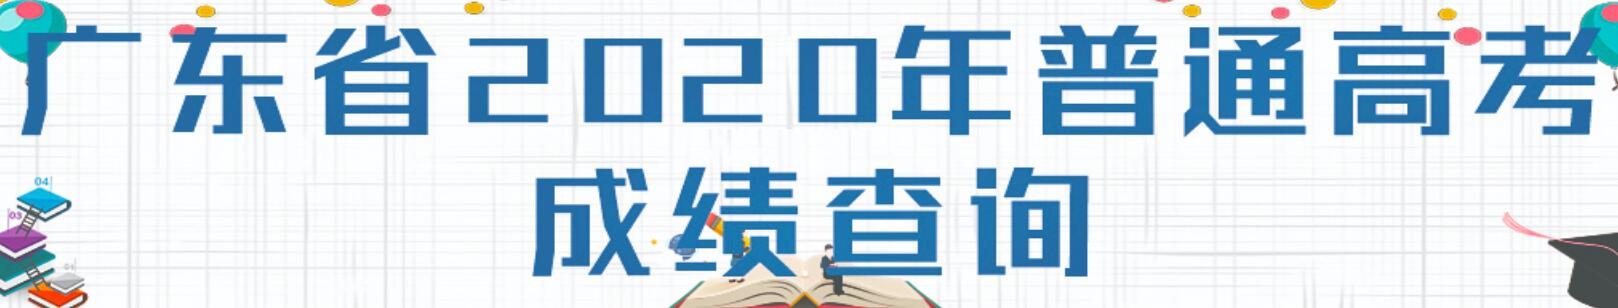 2020年广东高考成绩查询入口已开通 点击进入